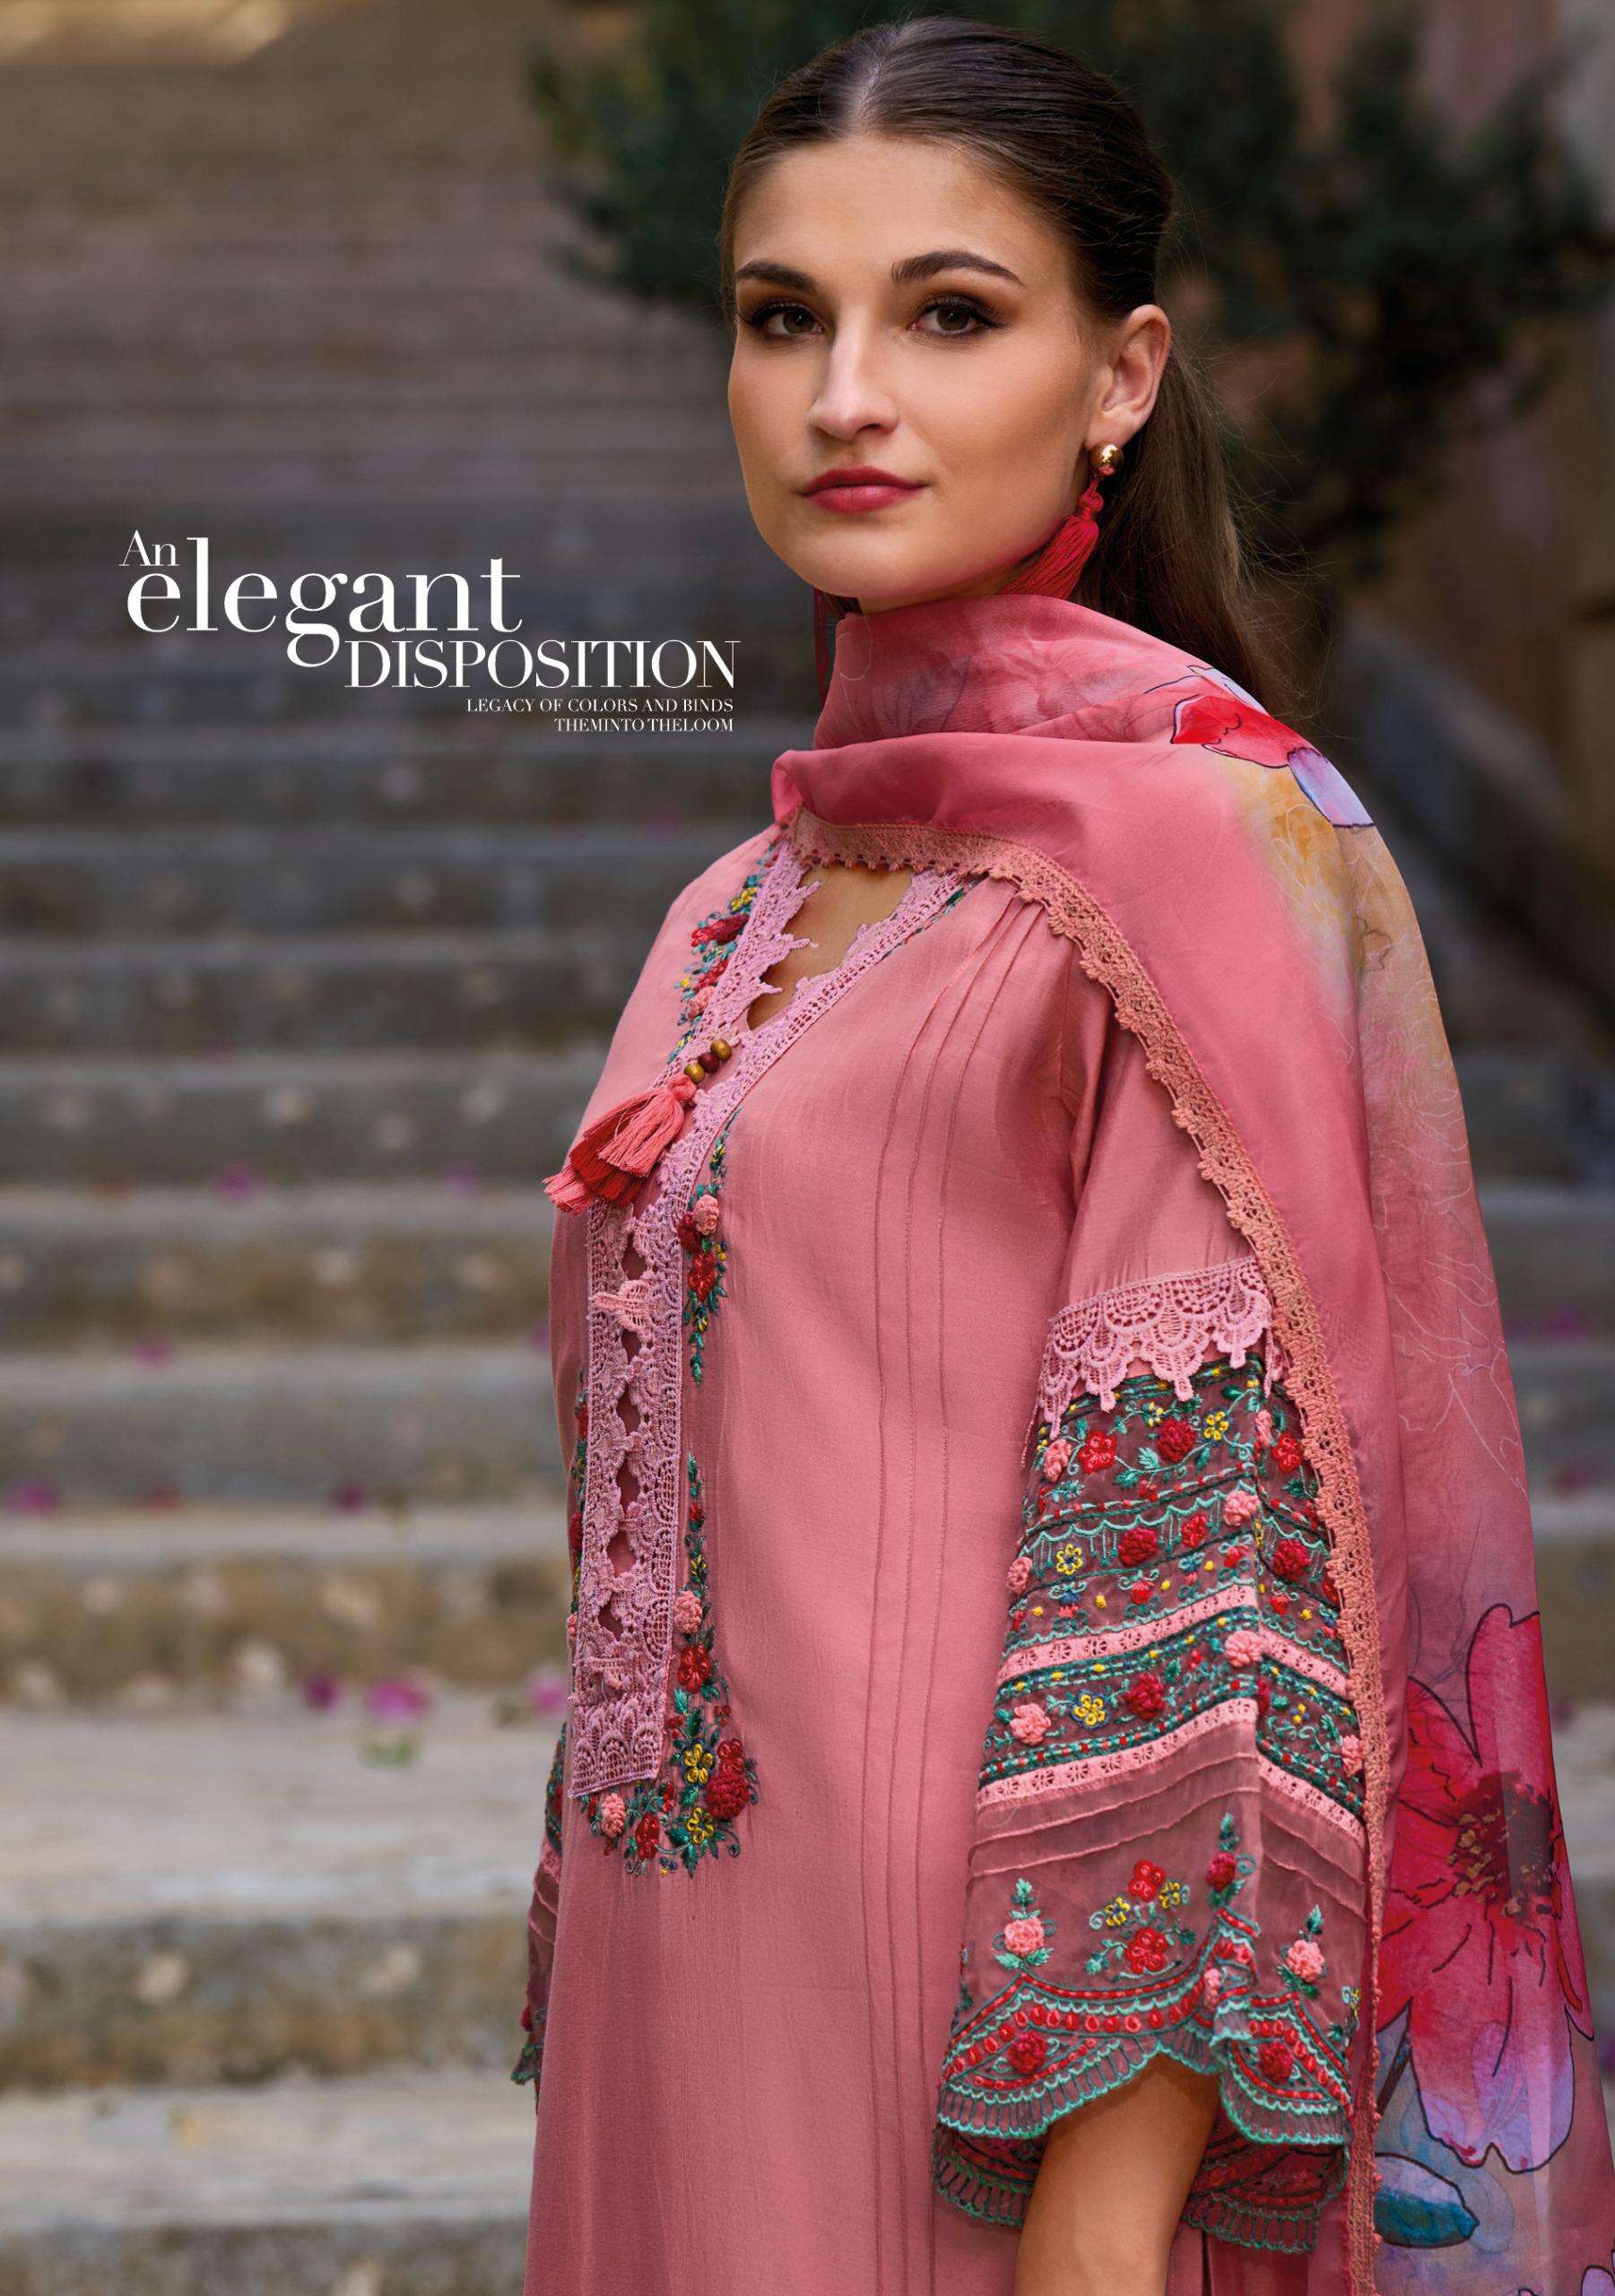 KAILEE FASHION  SANJ- E- SHRUNGAR Pakistani Suits Wholesale catalog